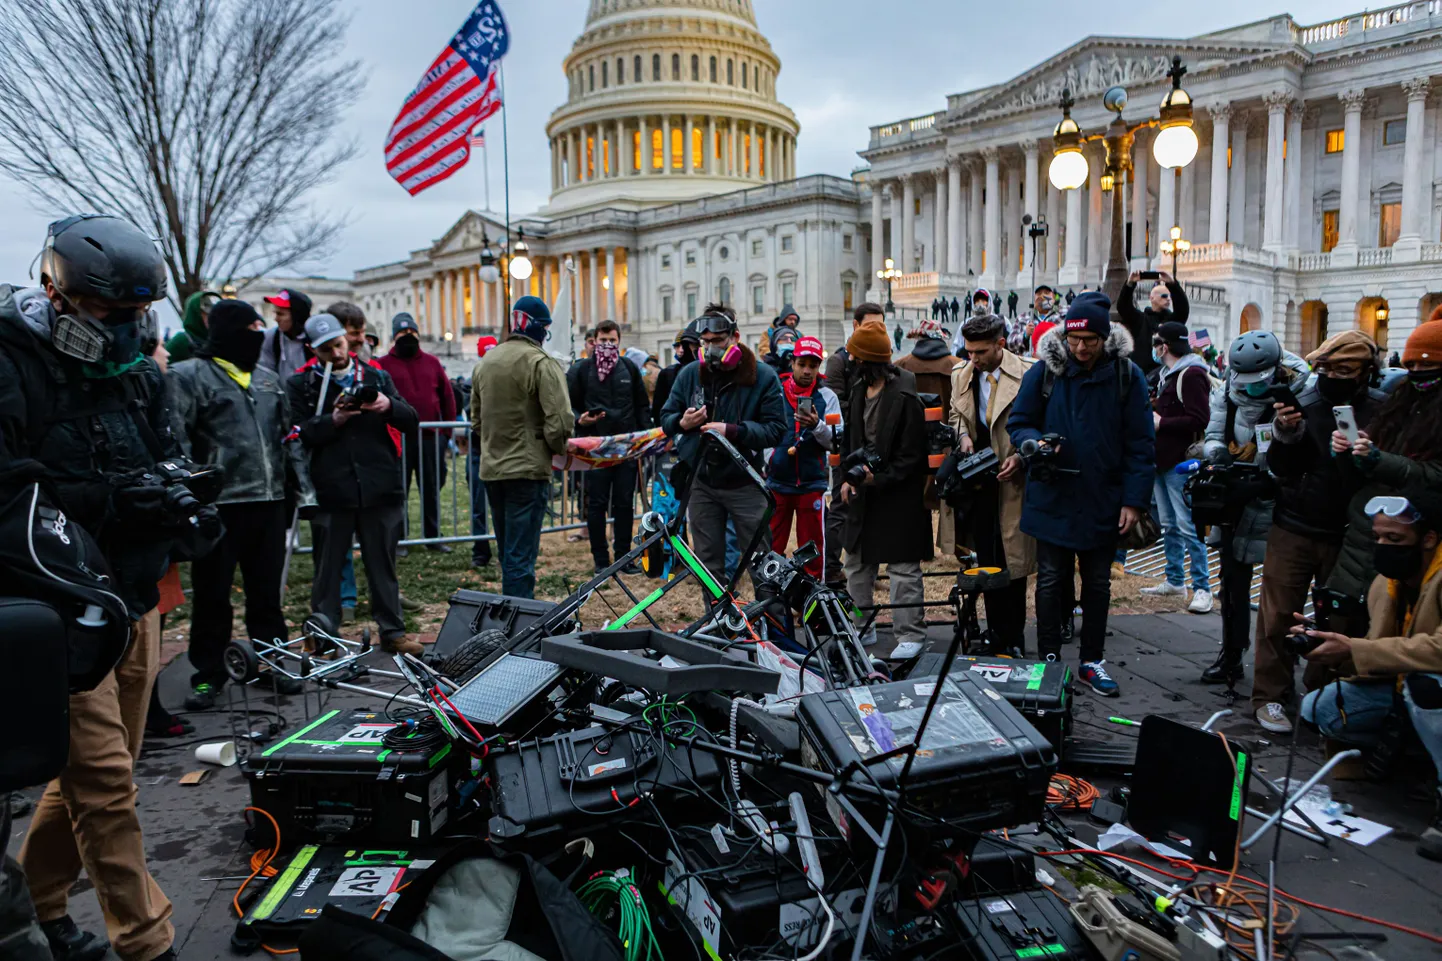 Donald Trumpi toetajad 6. jaanuaril 2021 Washingtonis Kapitooliumi juures, mida nad ründasid. Pildil lõhuvad mässajad telejaamade operaatorite ja ajakirjanike tehnikat